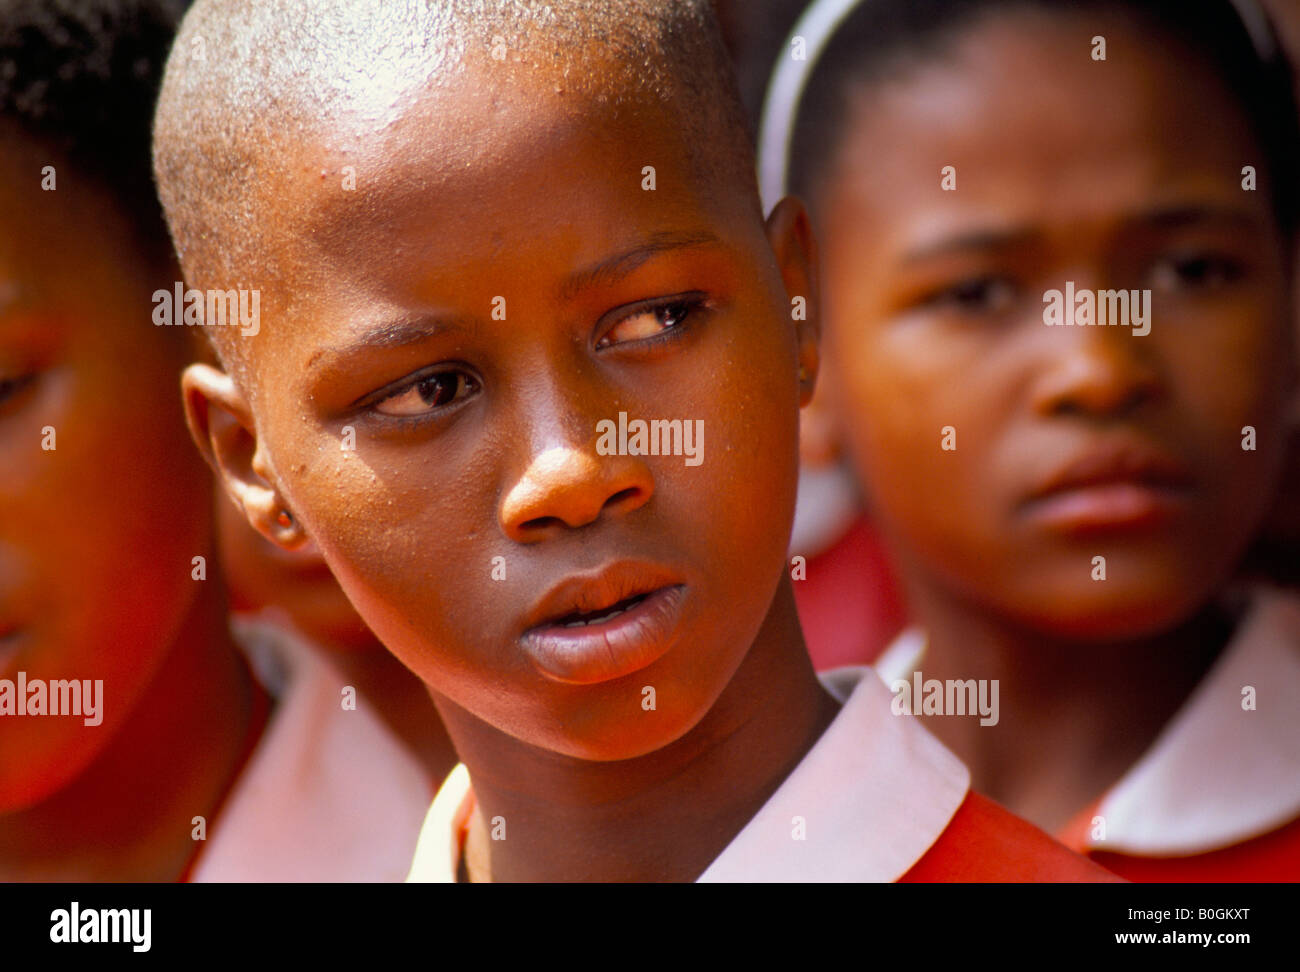 Le portrait d'une fille de l'école dans une école primaire, Township Katlehong, Afrique du Sud. Banque D'Images